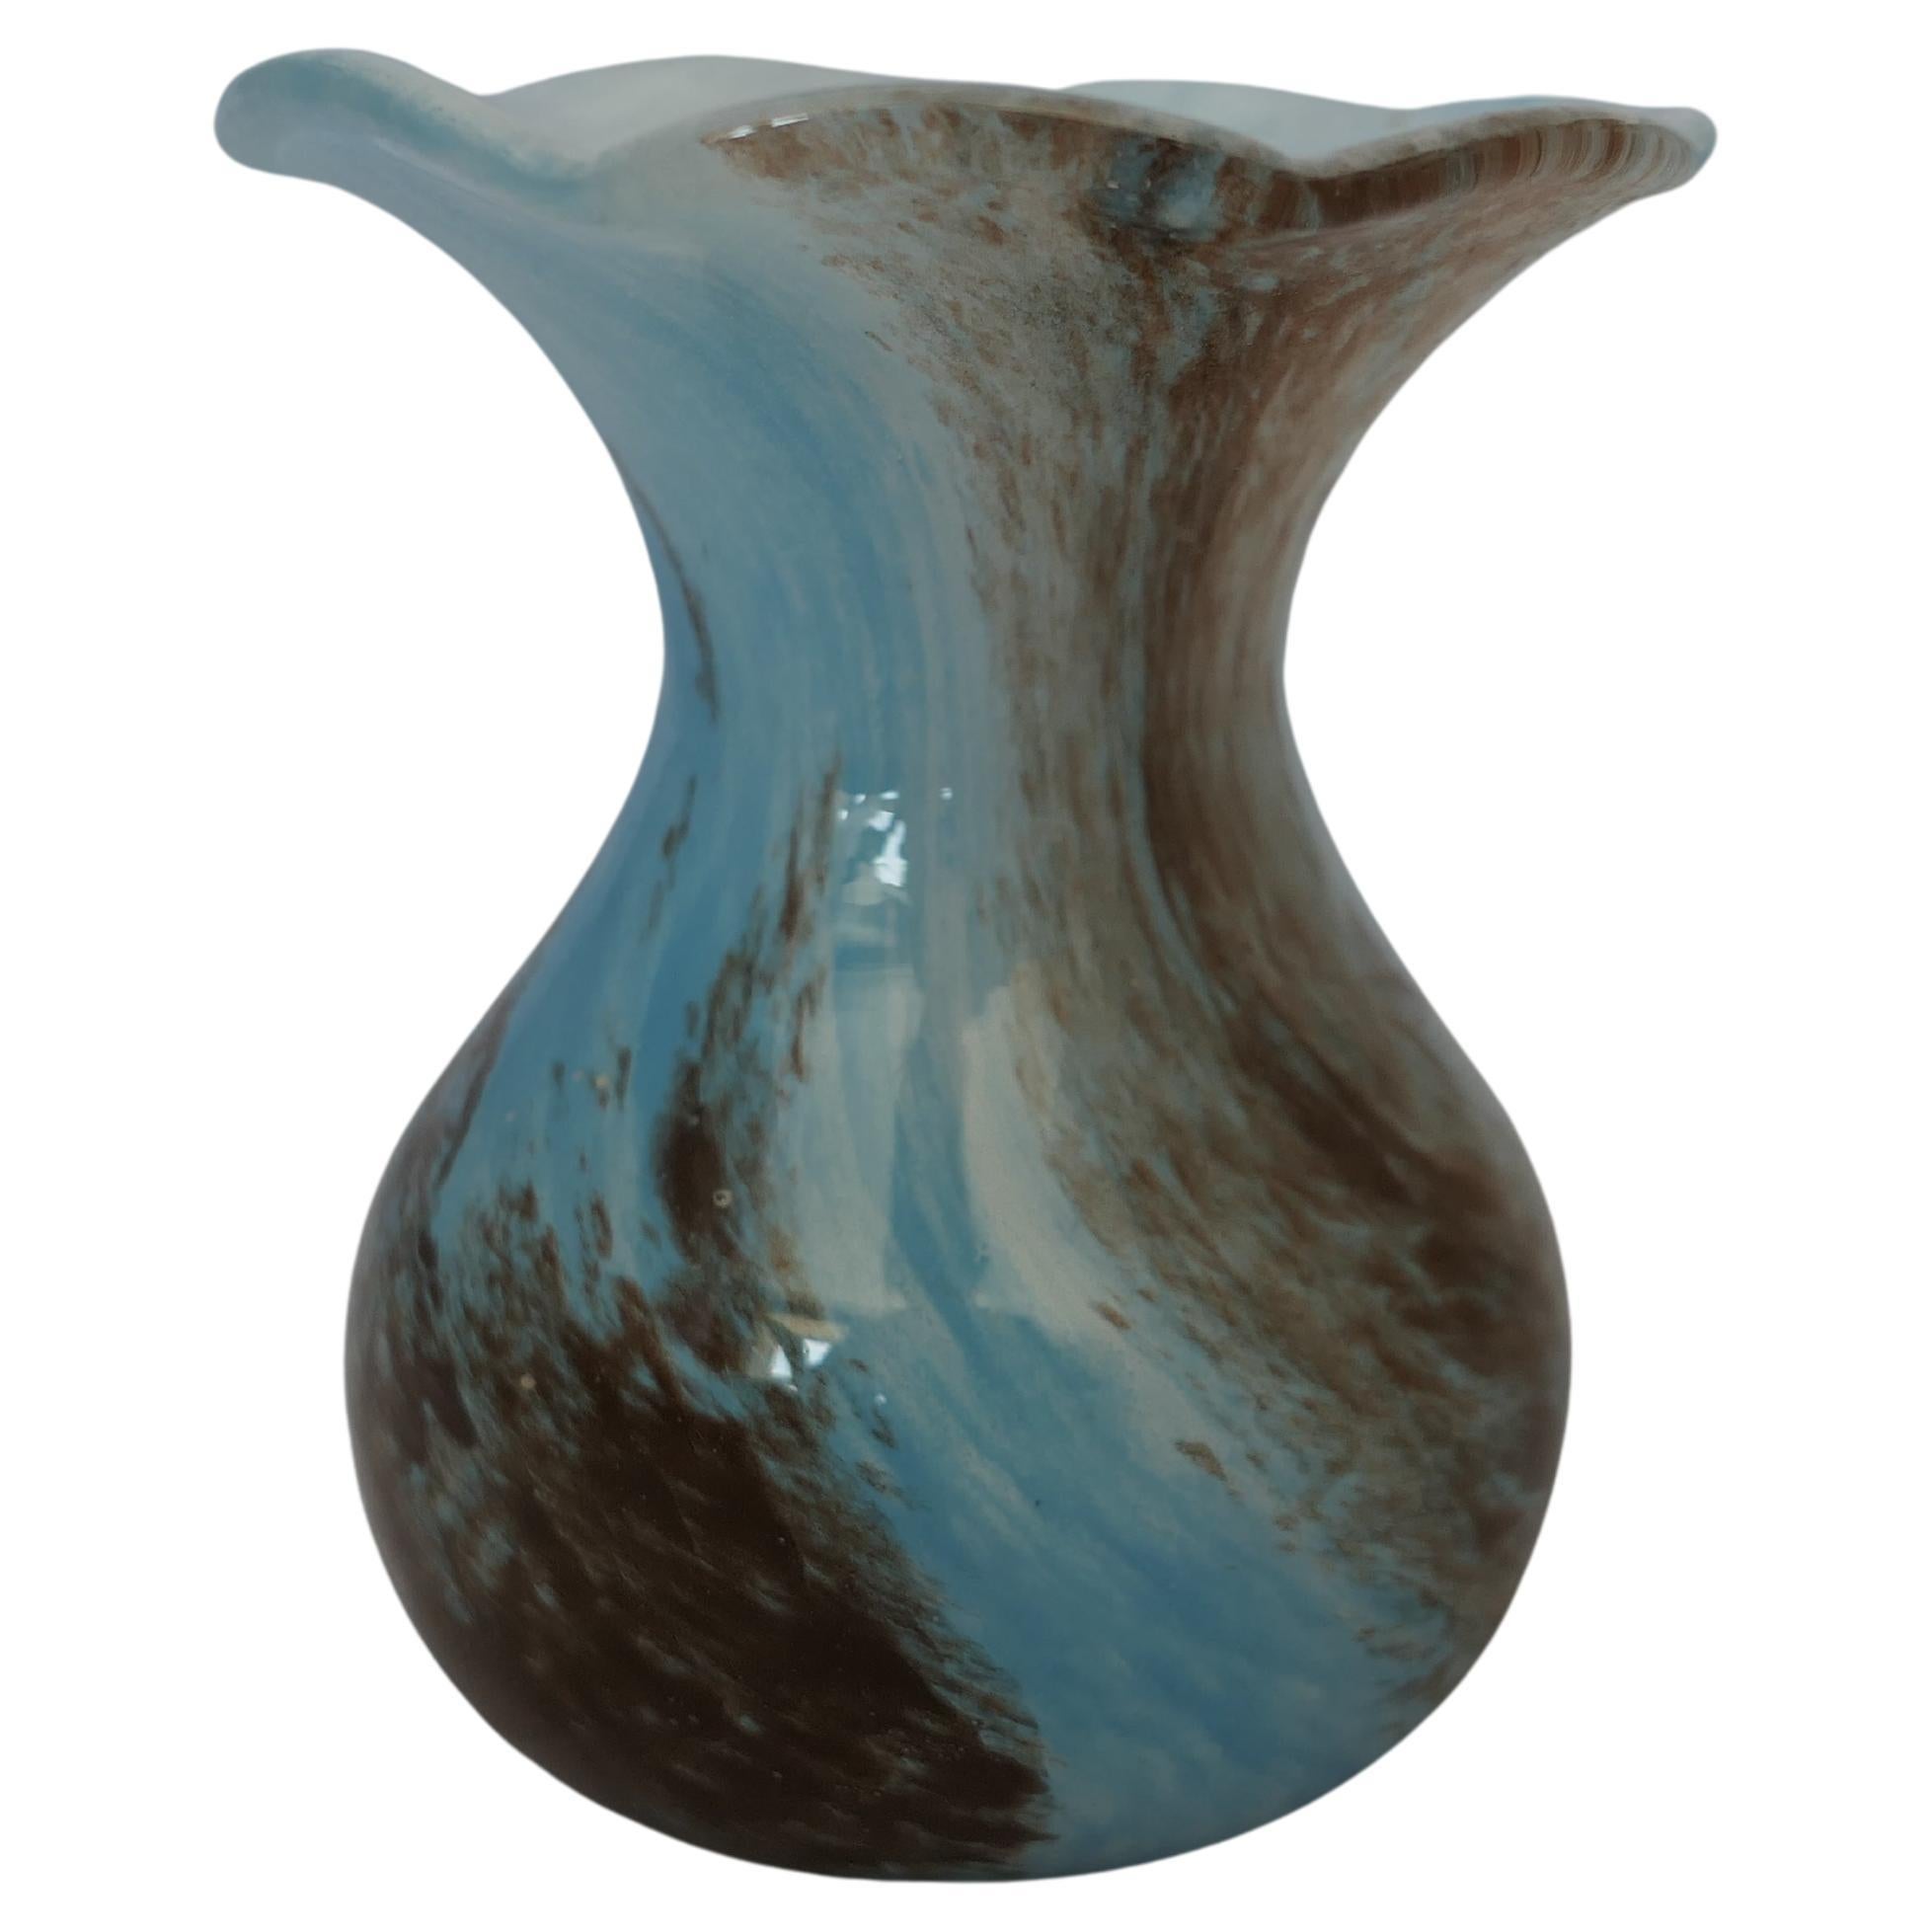 Handgeblasene viktorianische blaue Posy-Vase  Eine reizvolle viktorianische Posy-Vase